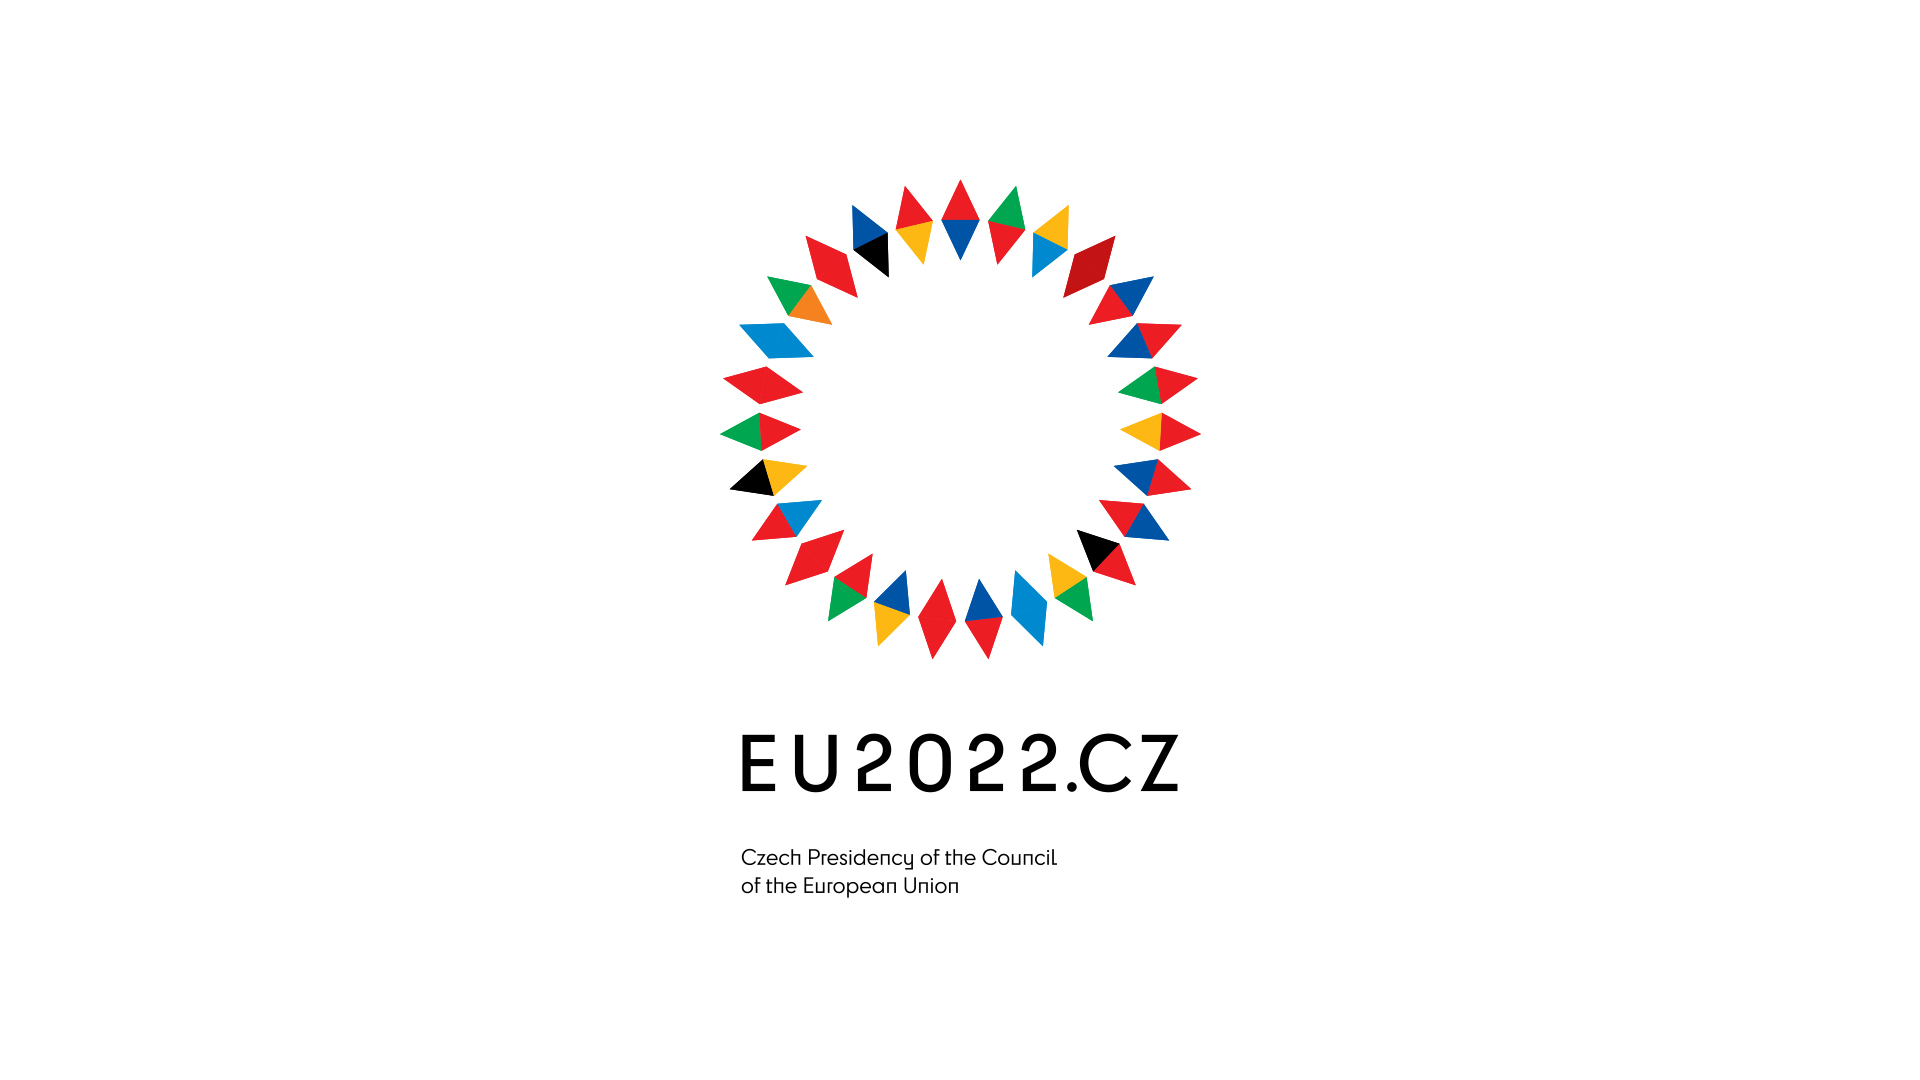 evropská unie, grafika, design, logo, grafický design, čeští grafici, české předsednictví eu 2022, rada evropské unie, české předsednictví v radě evropské unie 2022, vizuál, předsednictví rady evropské unie